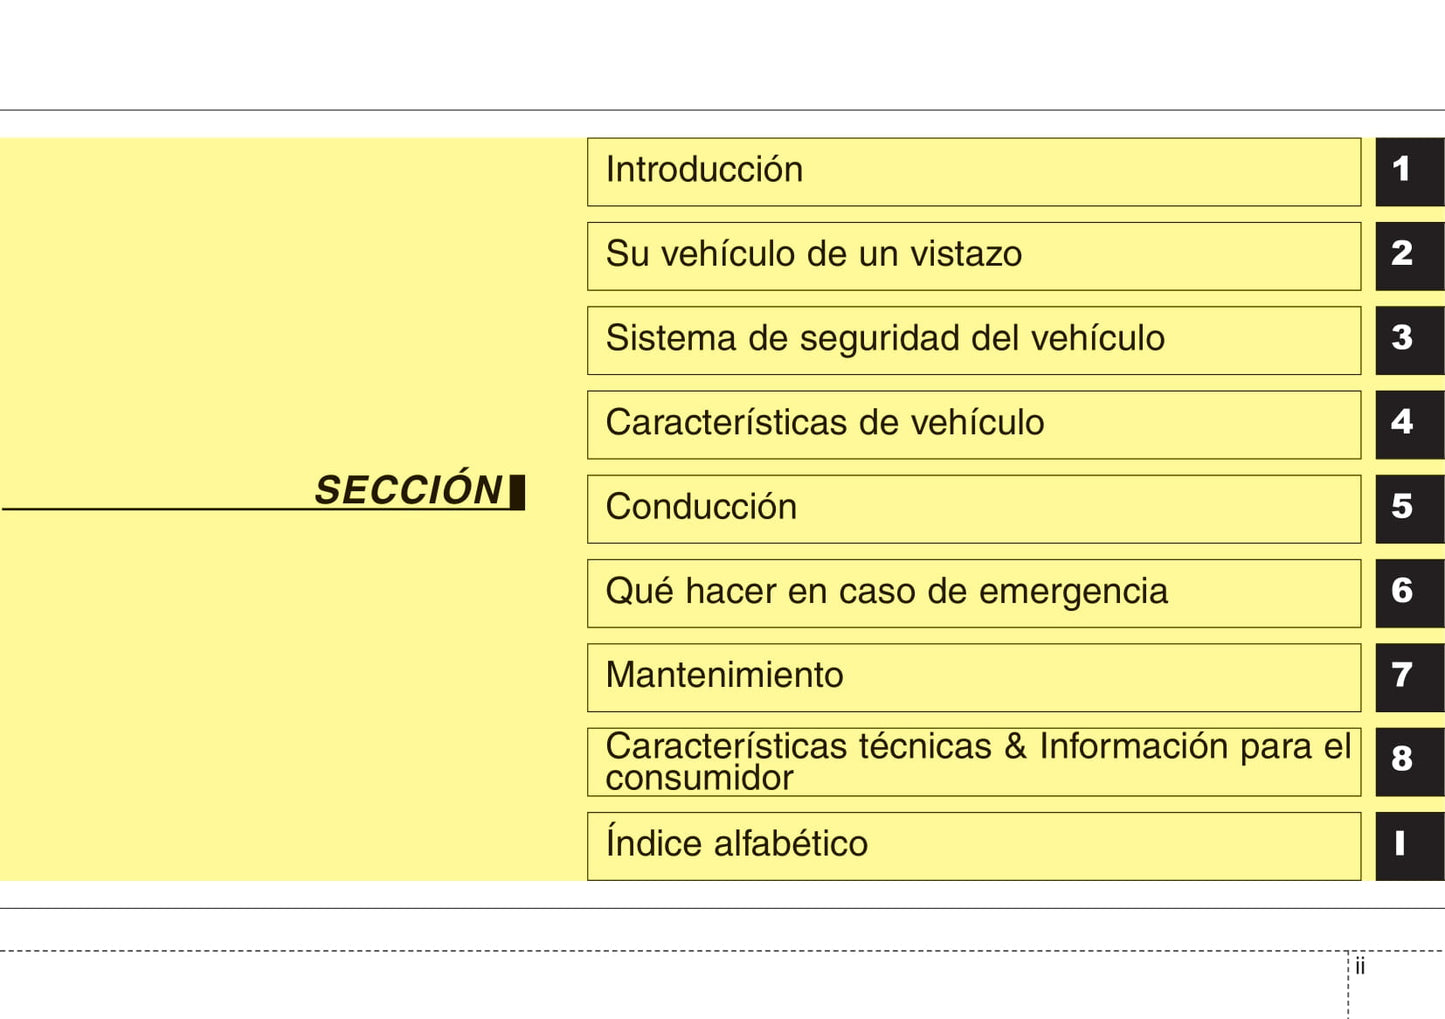 2013-2014 Kia Optima Gebruikershandleiding | Spaans